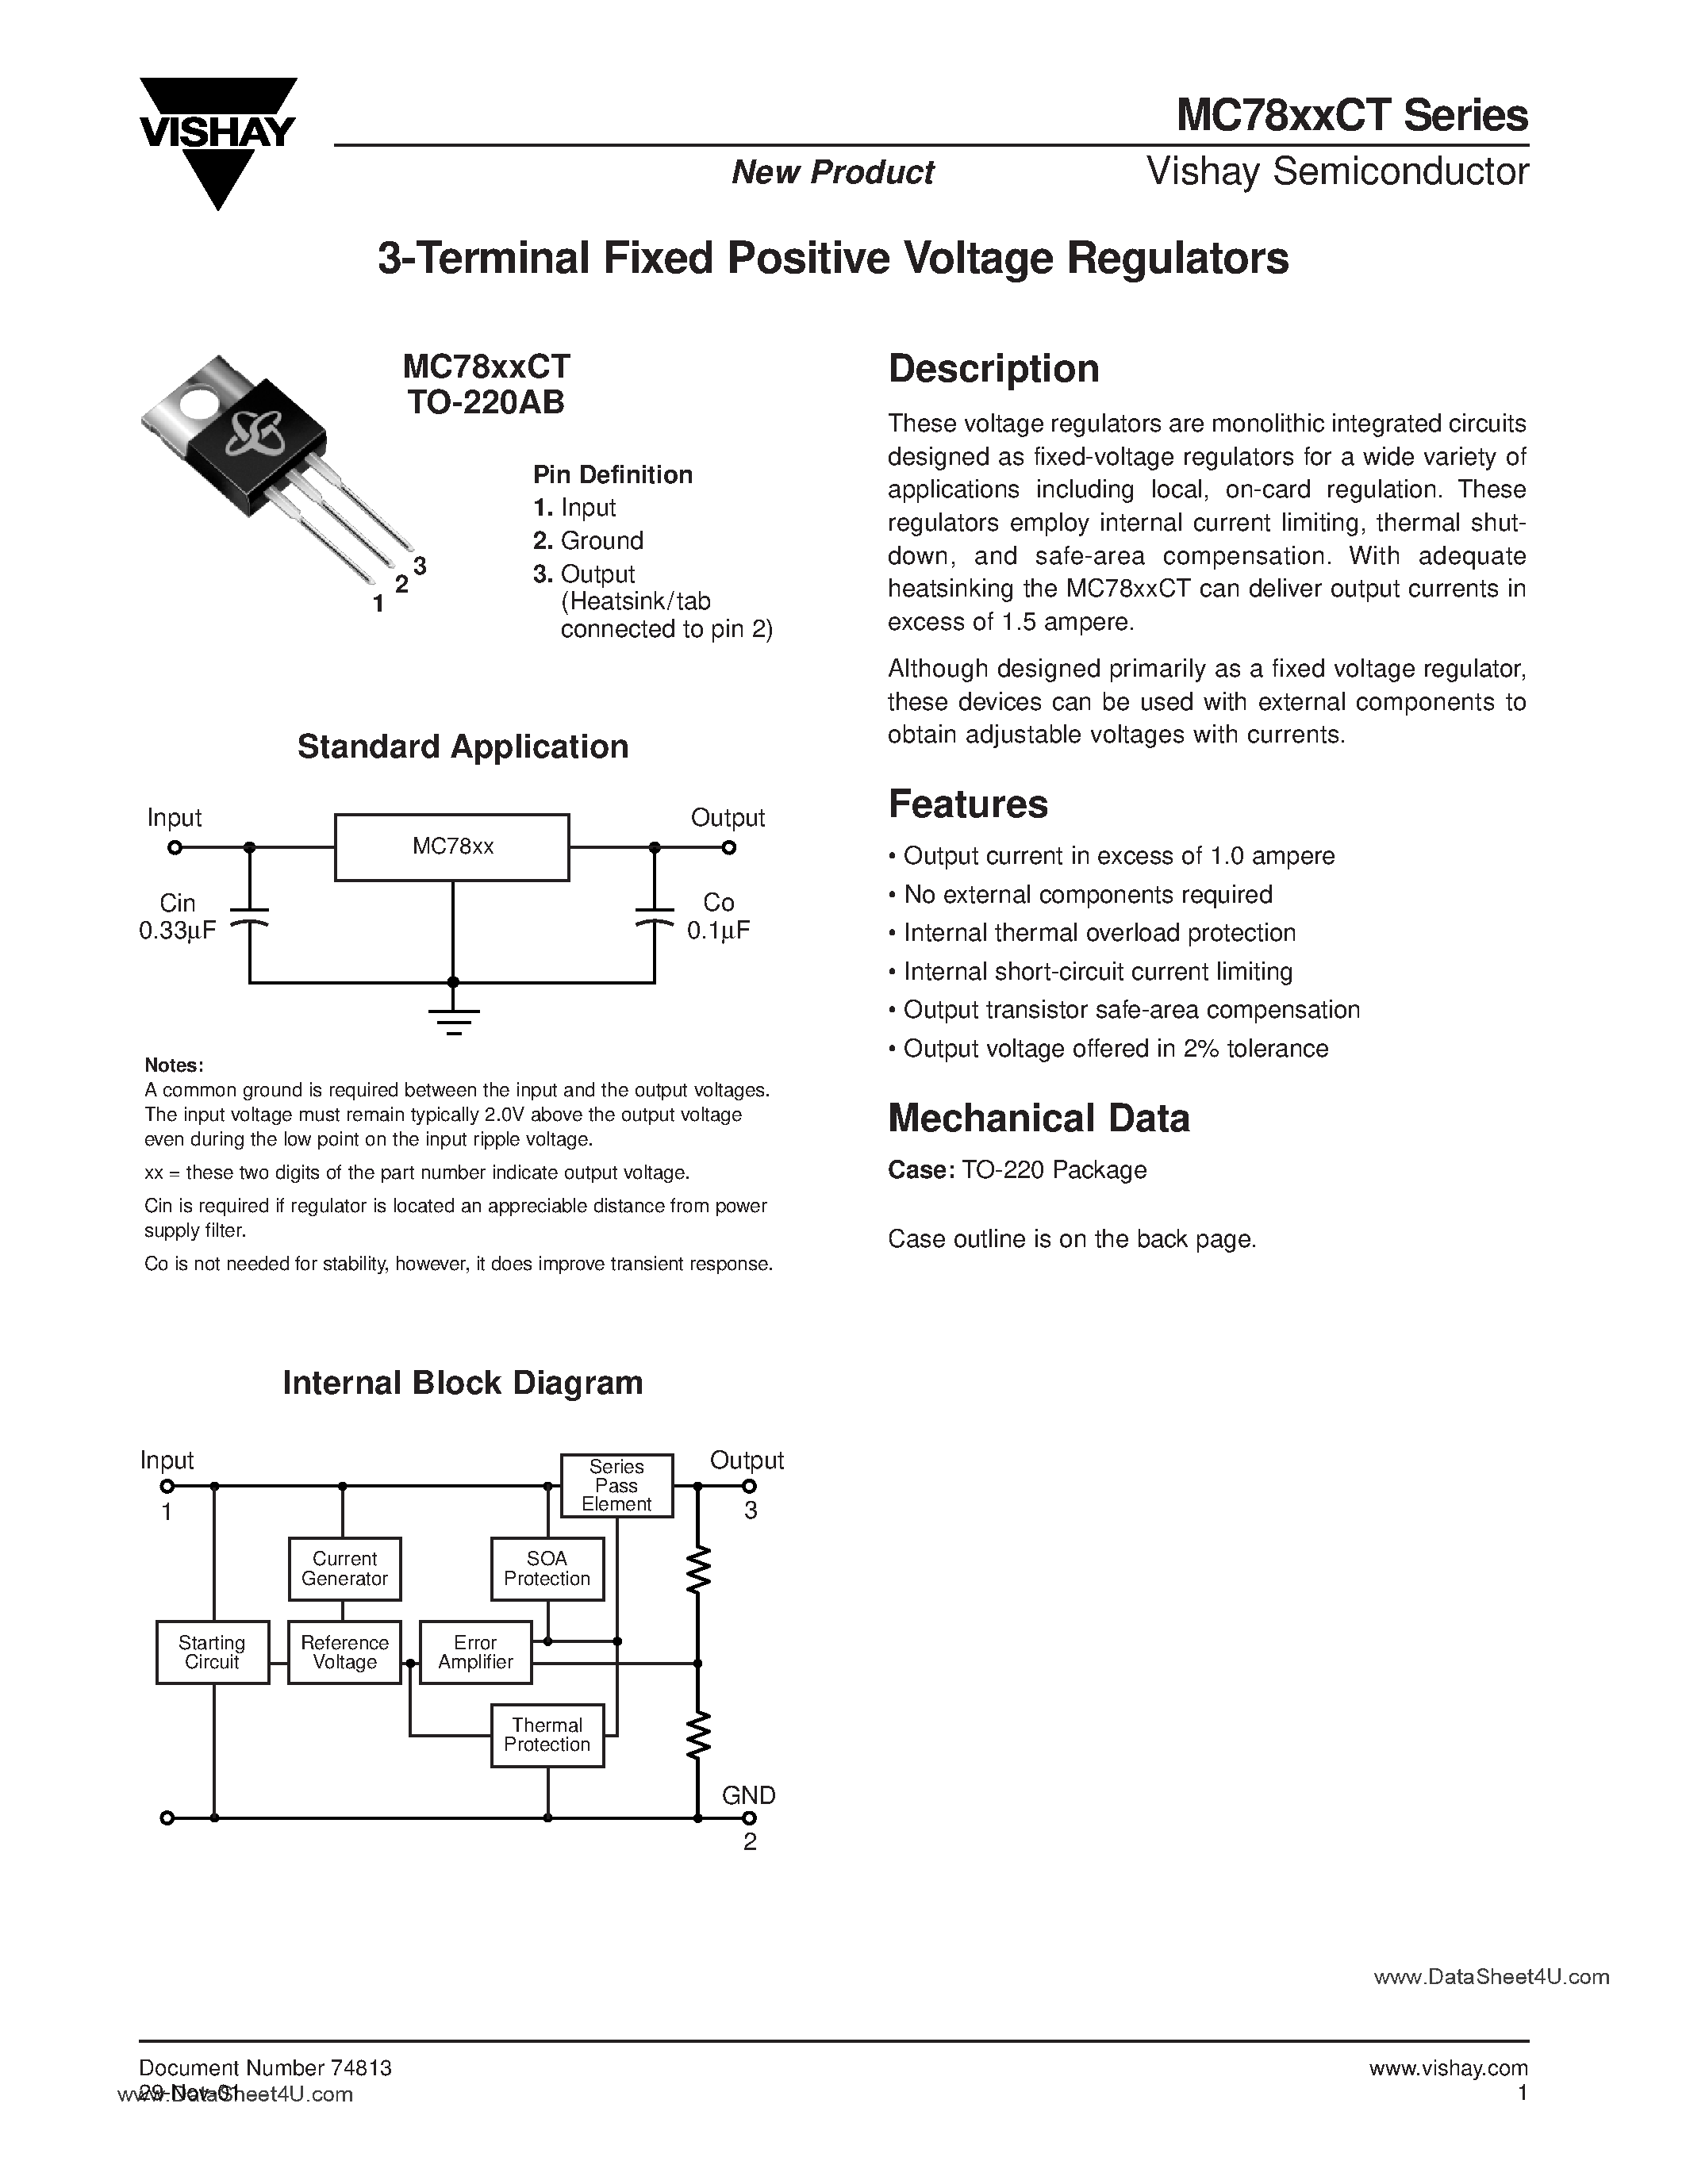 Даташит MC7805CT-(MC78xxCT) 3-Terminal Fixed Positive Voltage Regulators страница 1